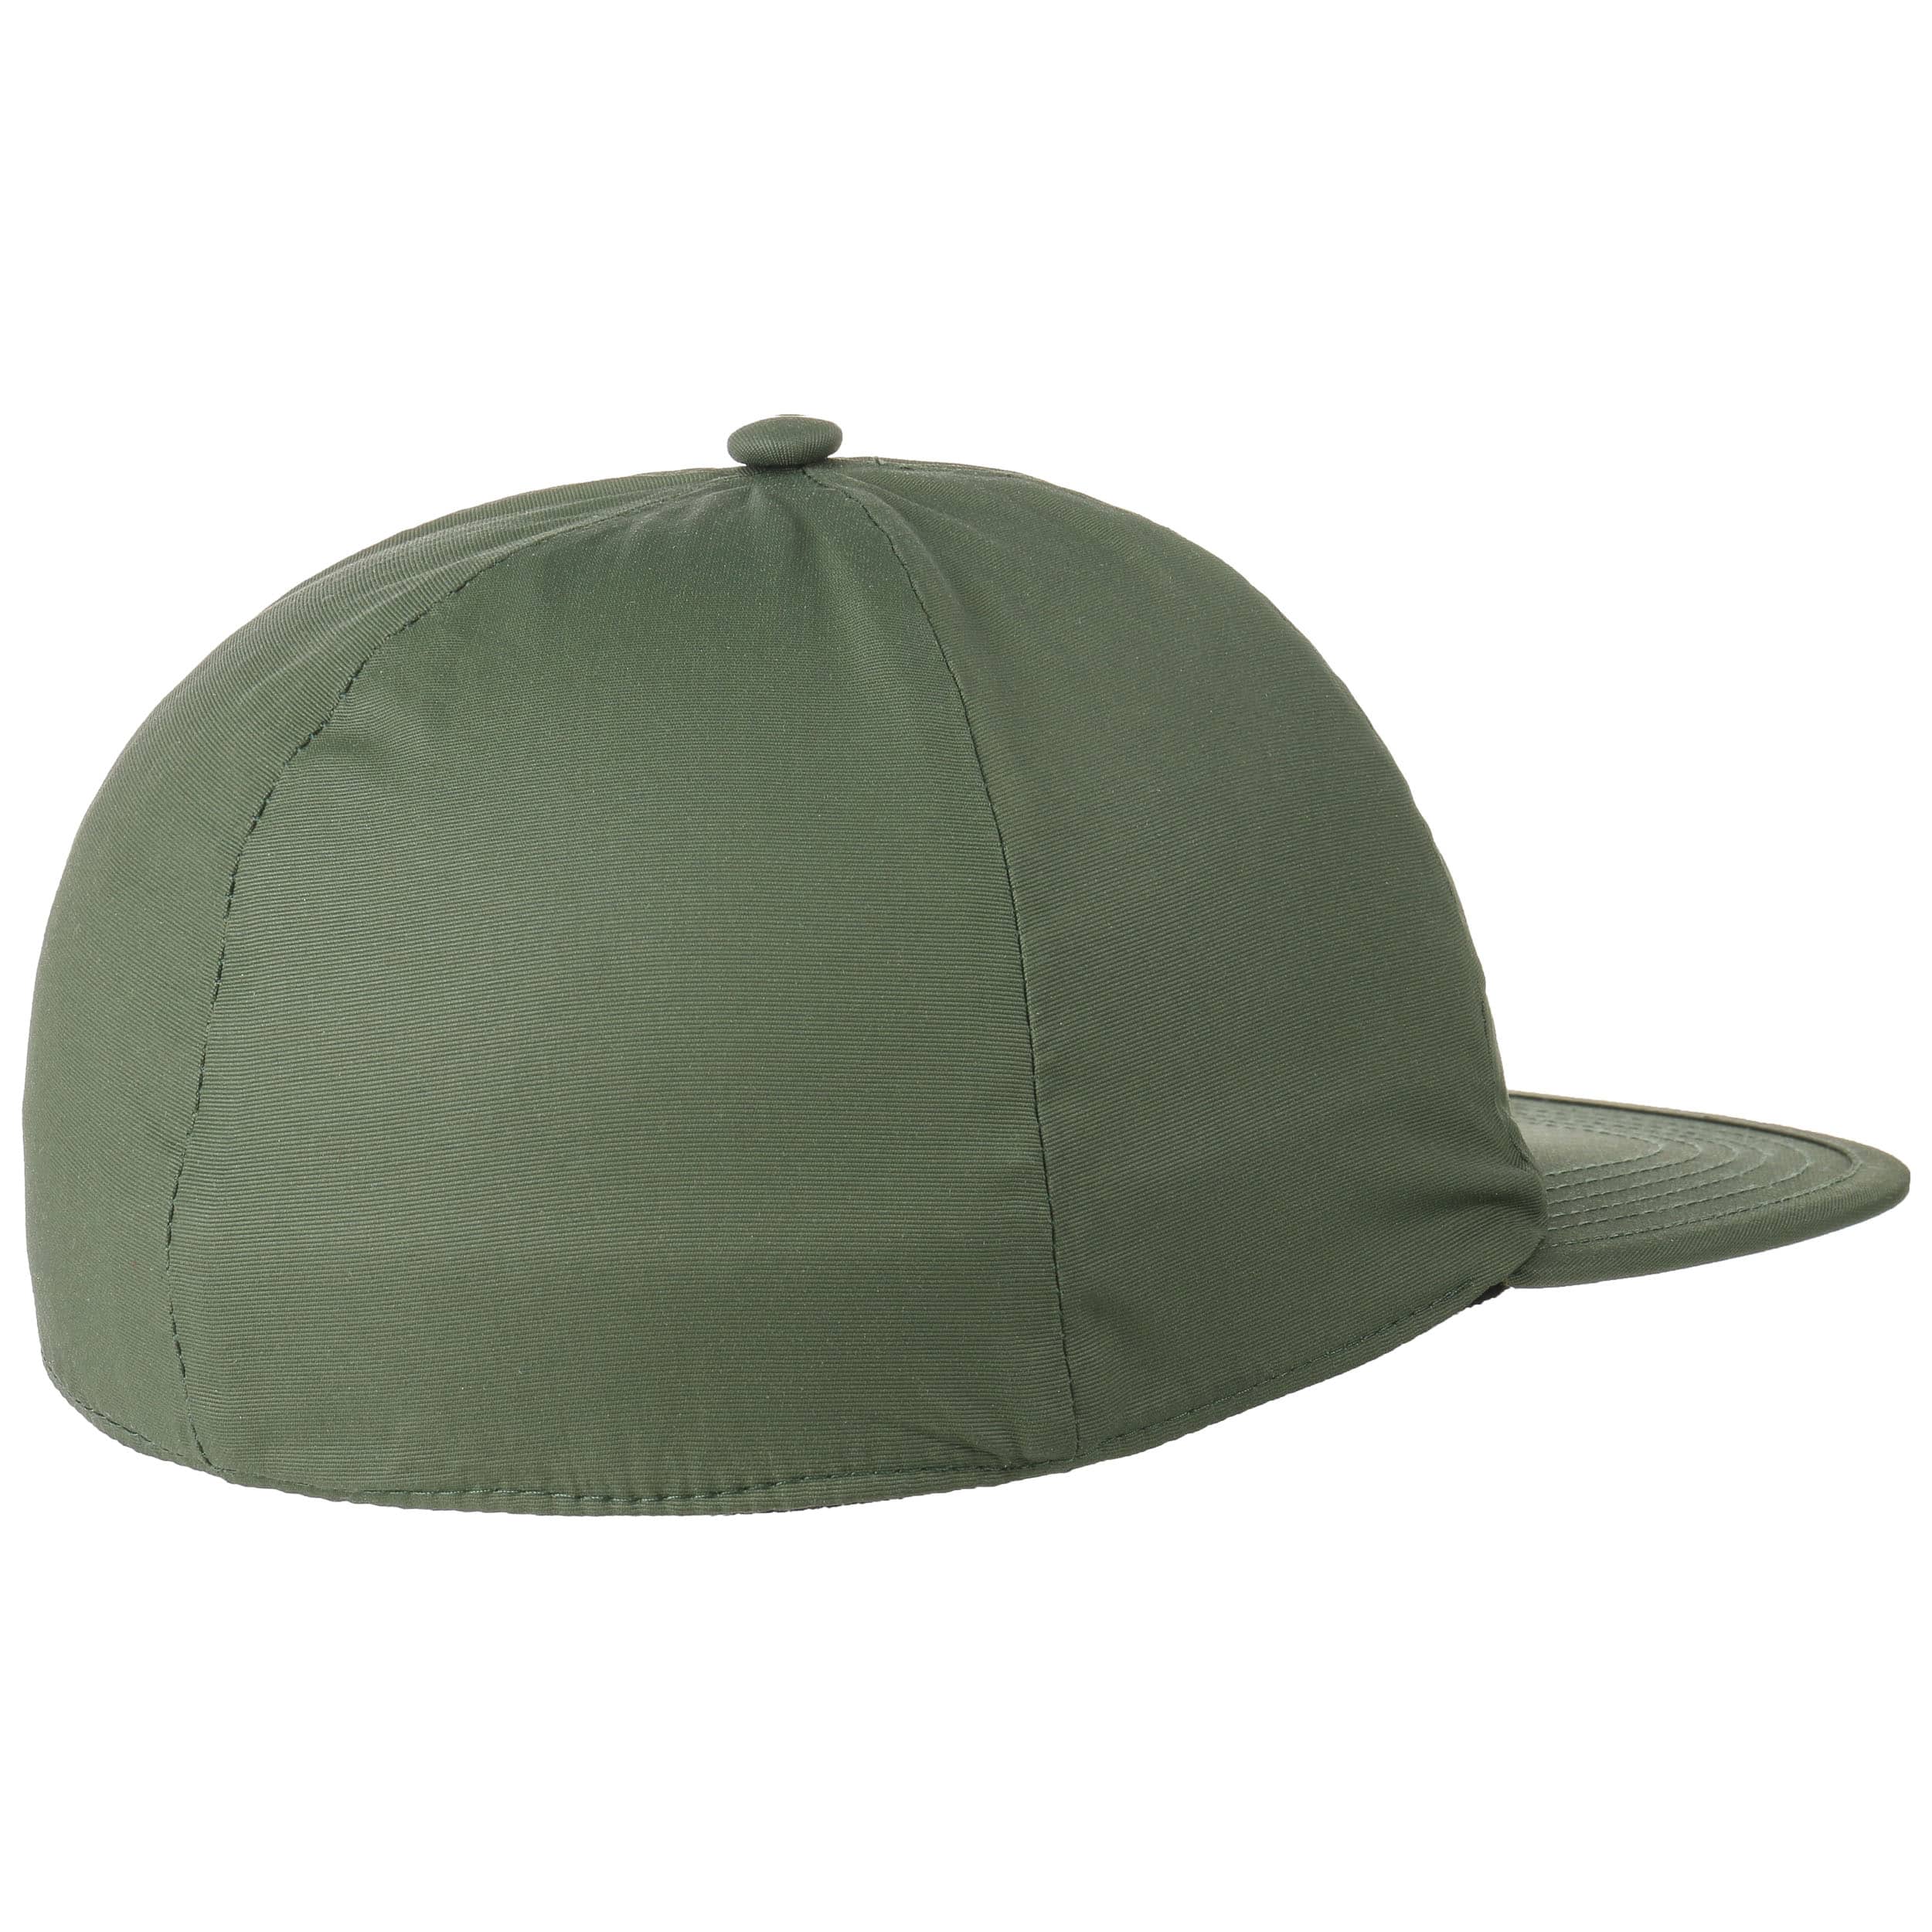 Performance Low Crown Cap by Levi´s, EUR 24,95 --> Hats, caps & beanies ...